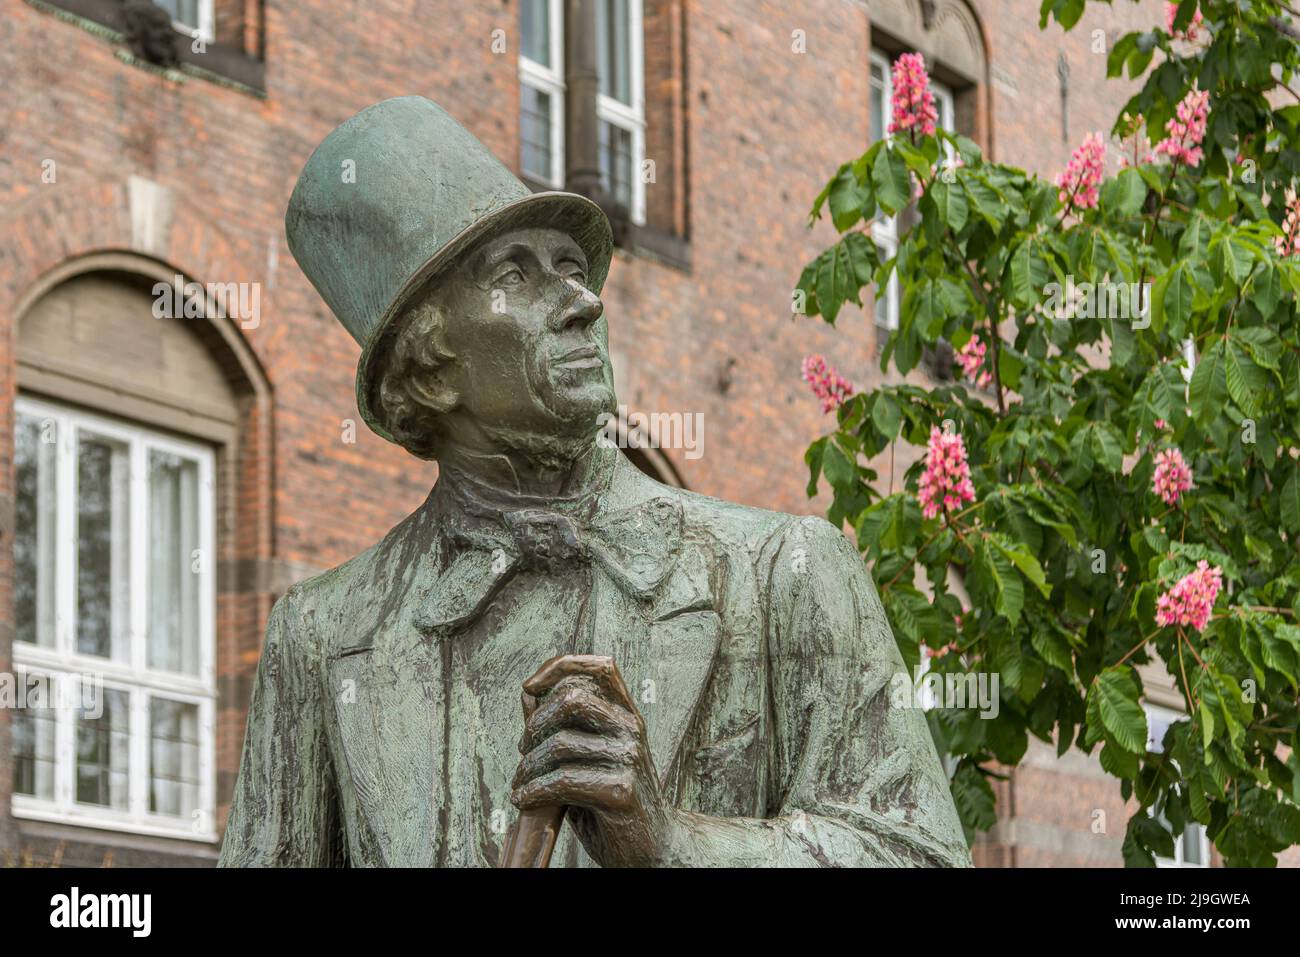 Busto de bronce del escritor danés H C Andersen, sentado frente a un edificio de ladrillo en Copenhague, Dinamarca, 21 de mayo de 2022 Foto de stock